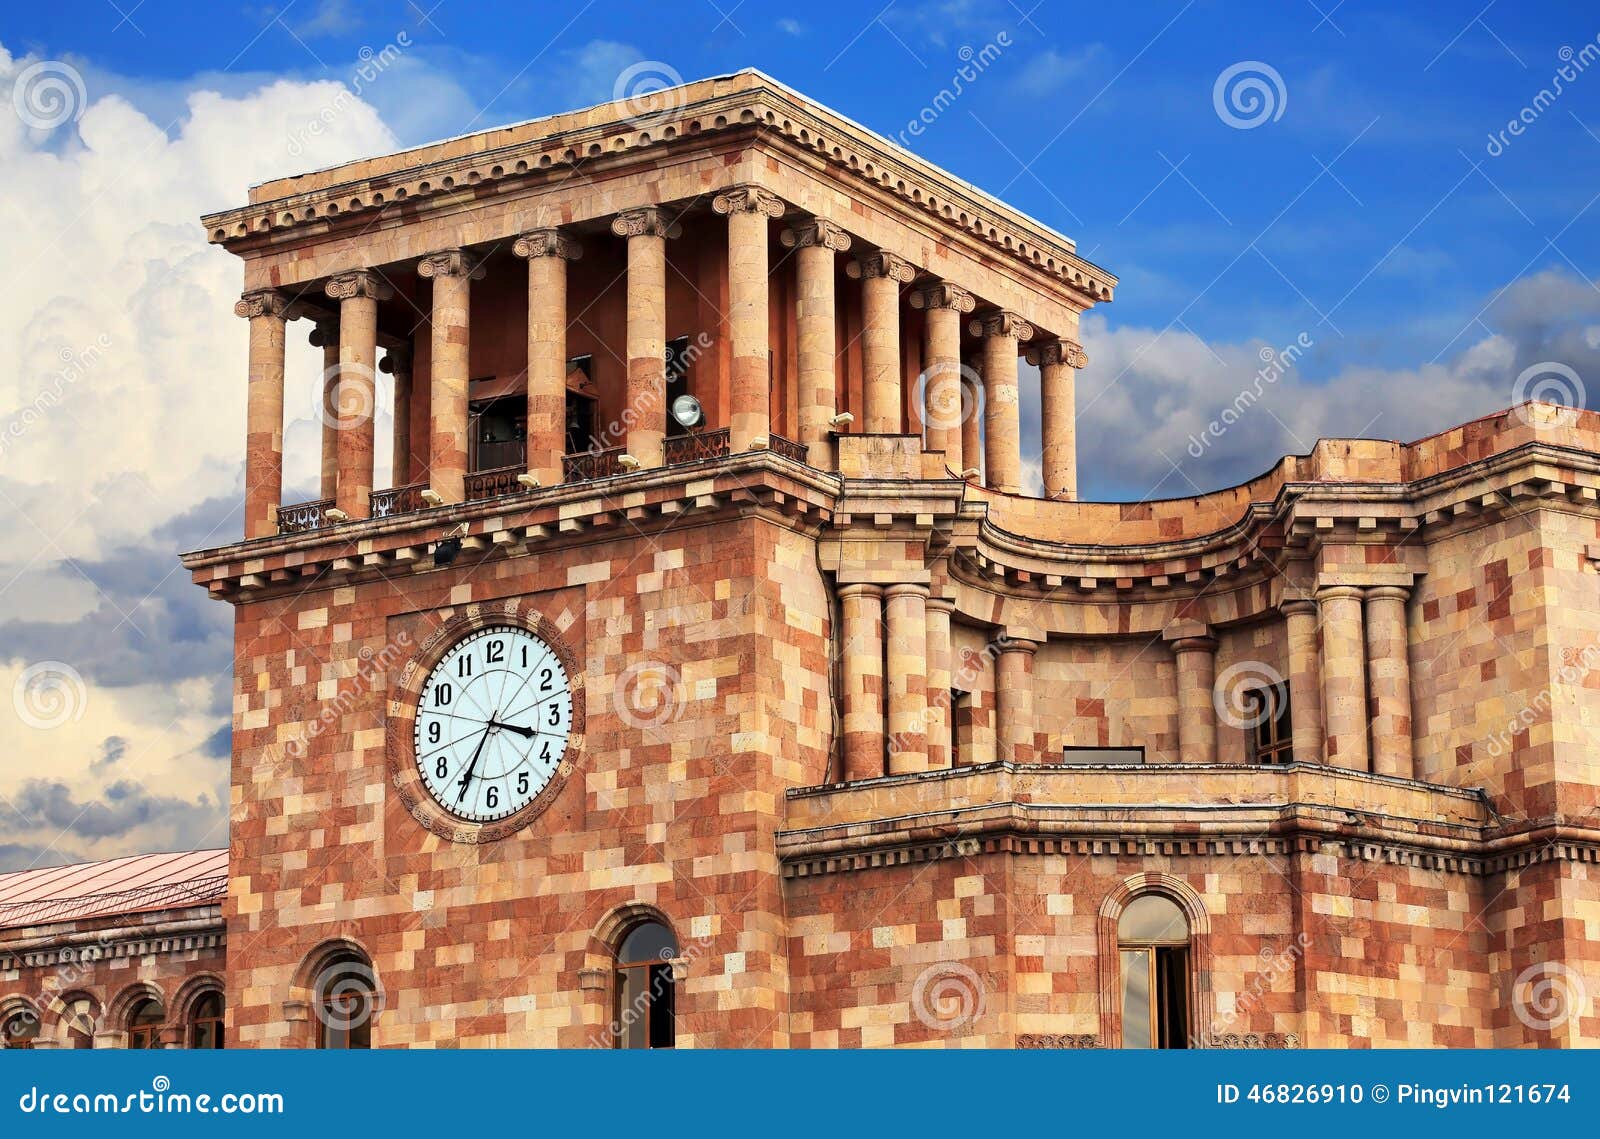 Ереван часовой. Дом радио в Ереване. Часы Ереван. Yerevan government building. Clock Factory Yerevan.